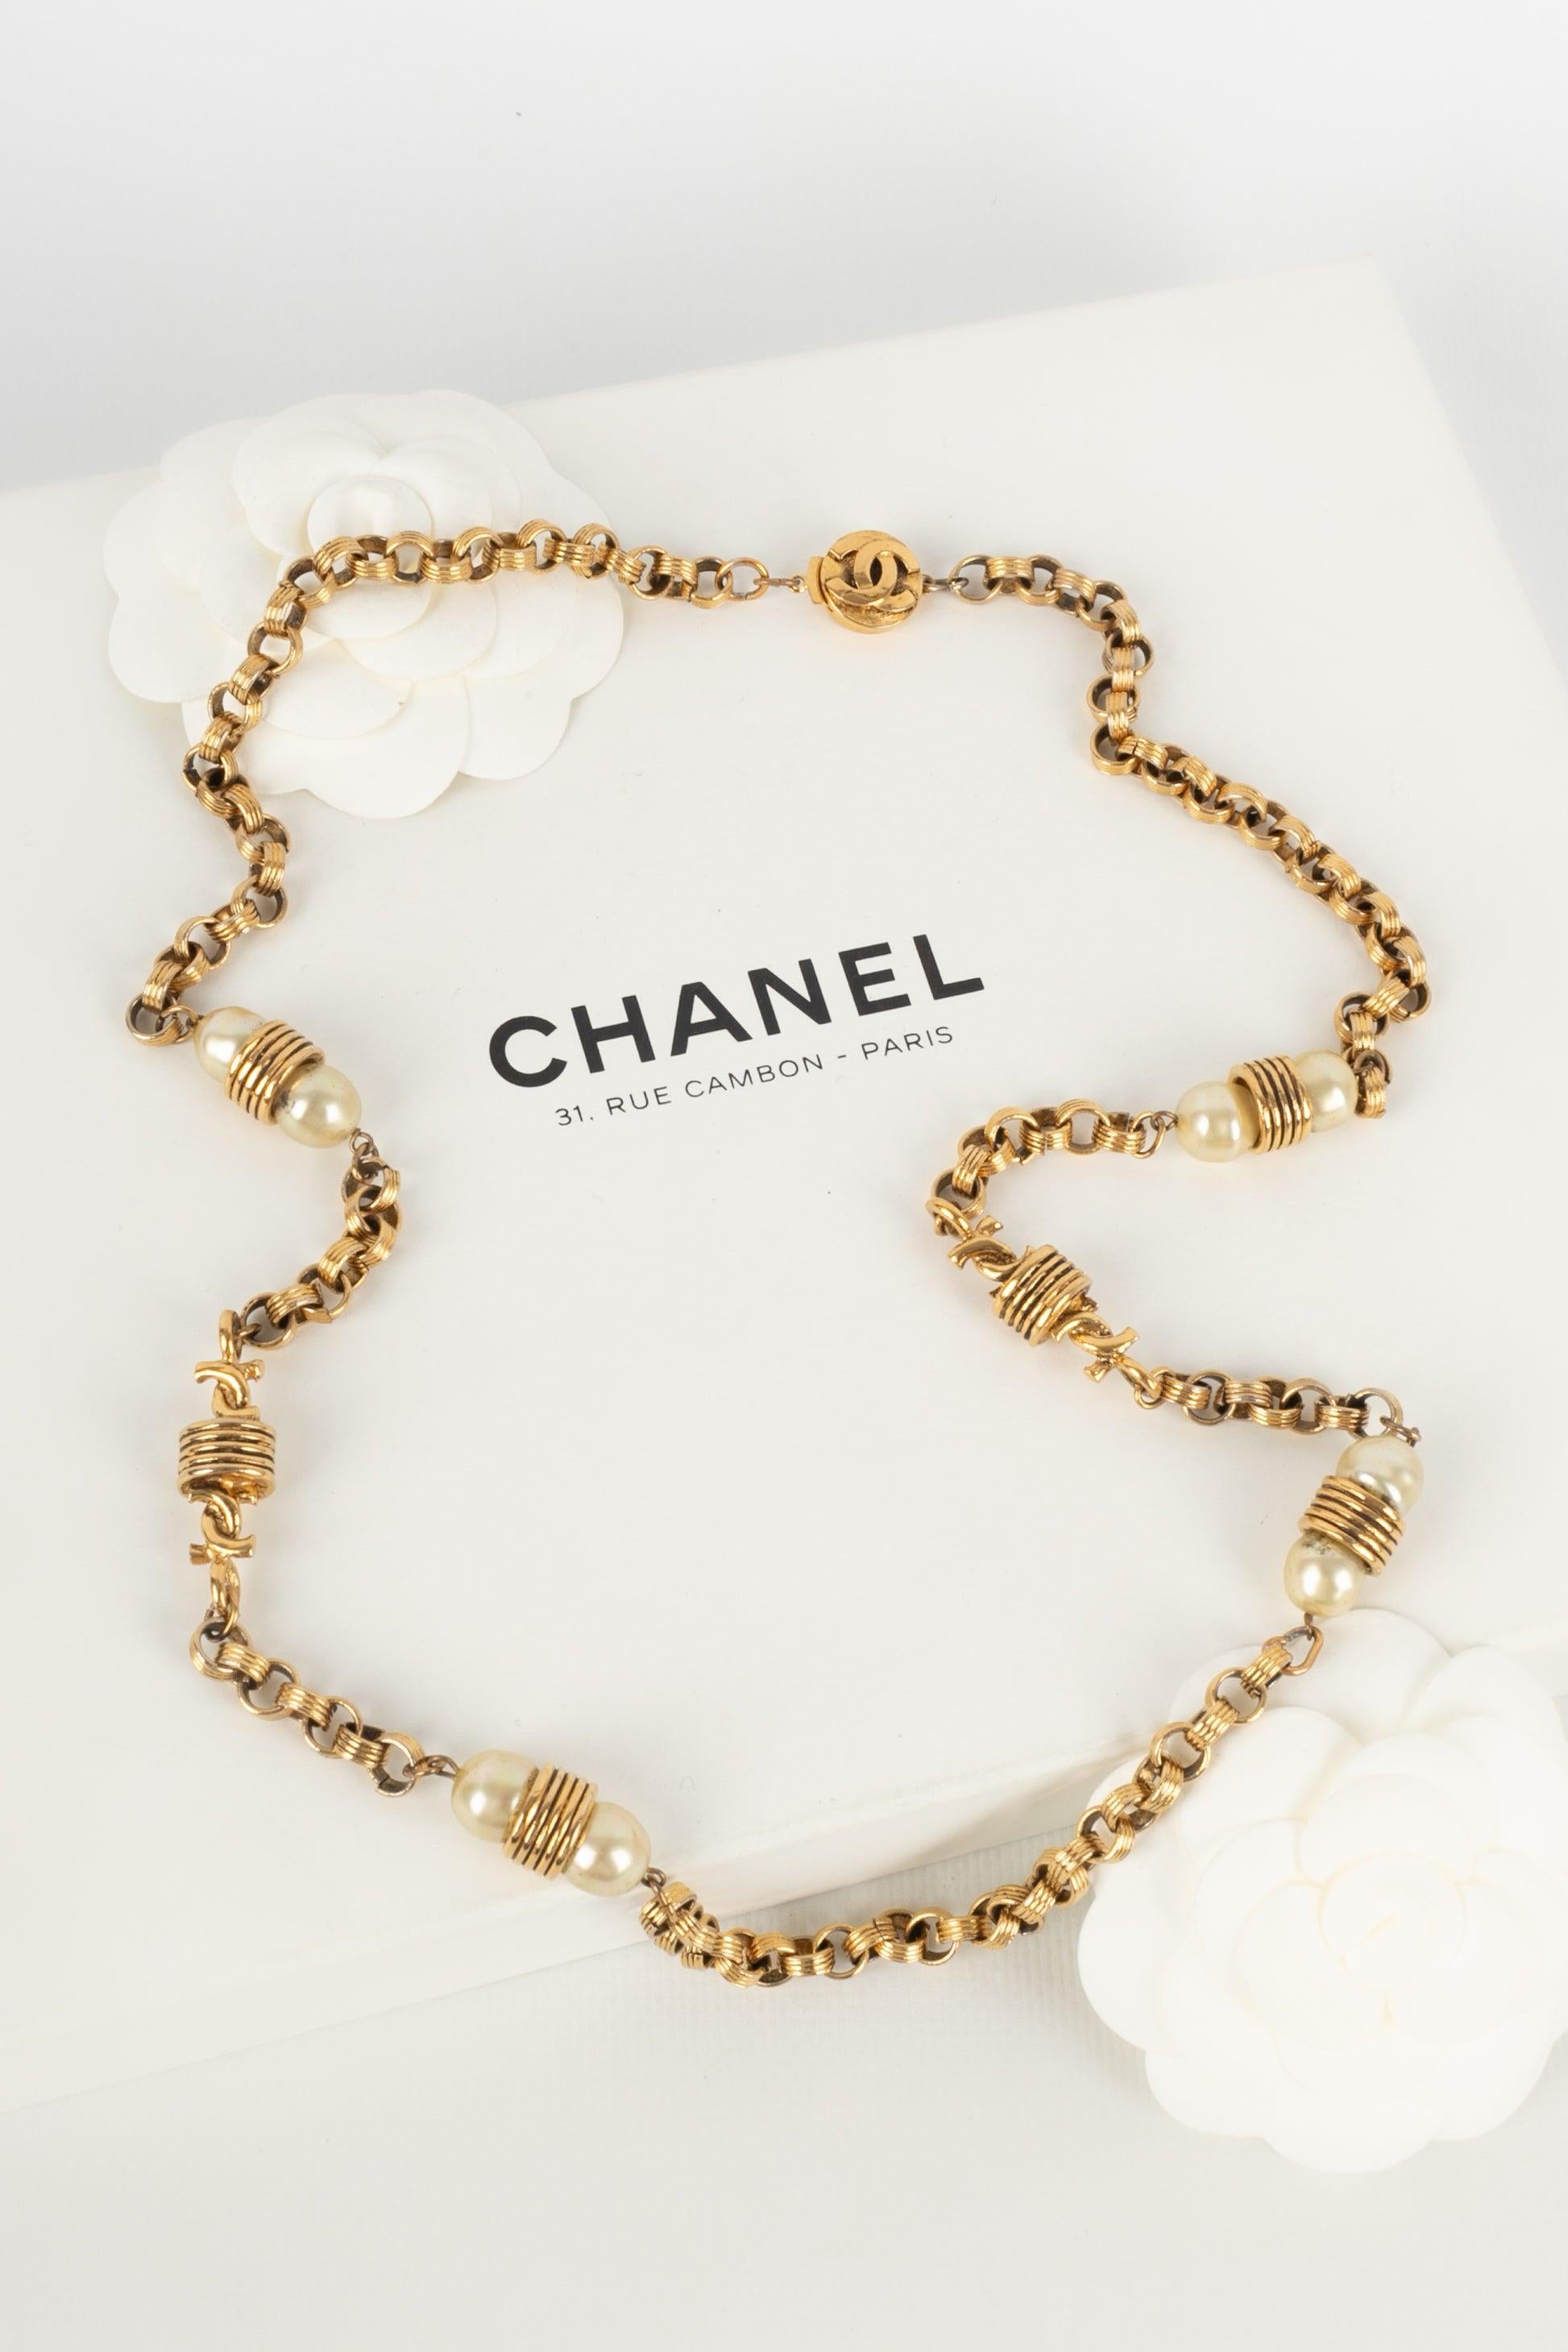 Chanel - Collier en métal doré avec perles fantaisie. Bijoux des années 1980.

Informations complémentaires :
Condit : Bon état
Dimensions : Longueur : 80 cm

Référence du vendeur : CB55